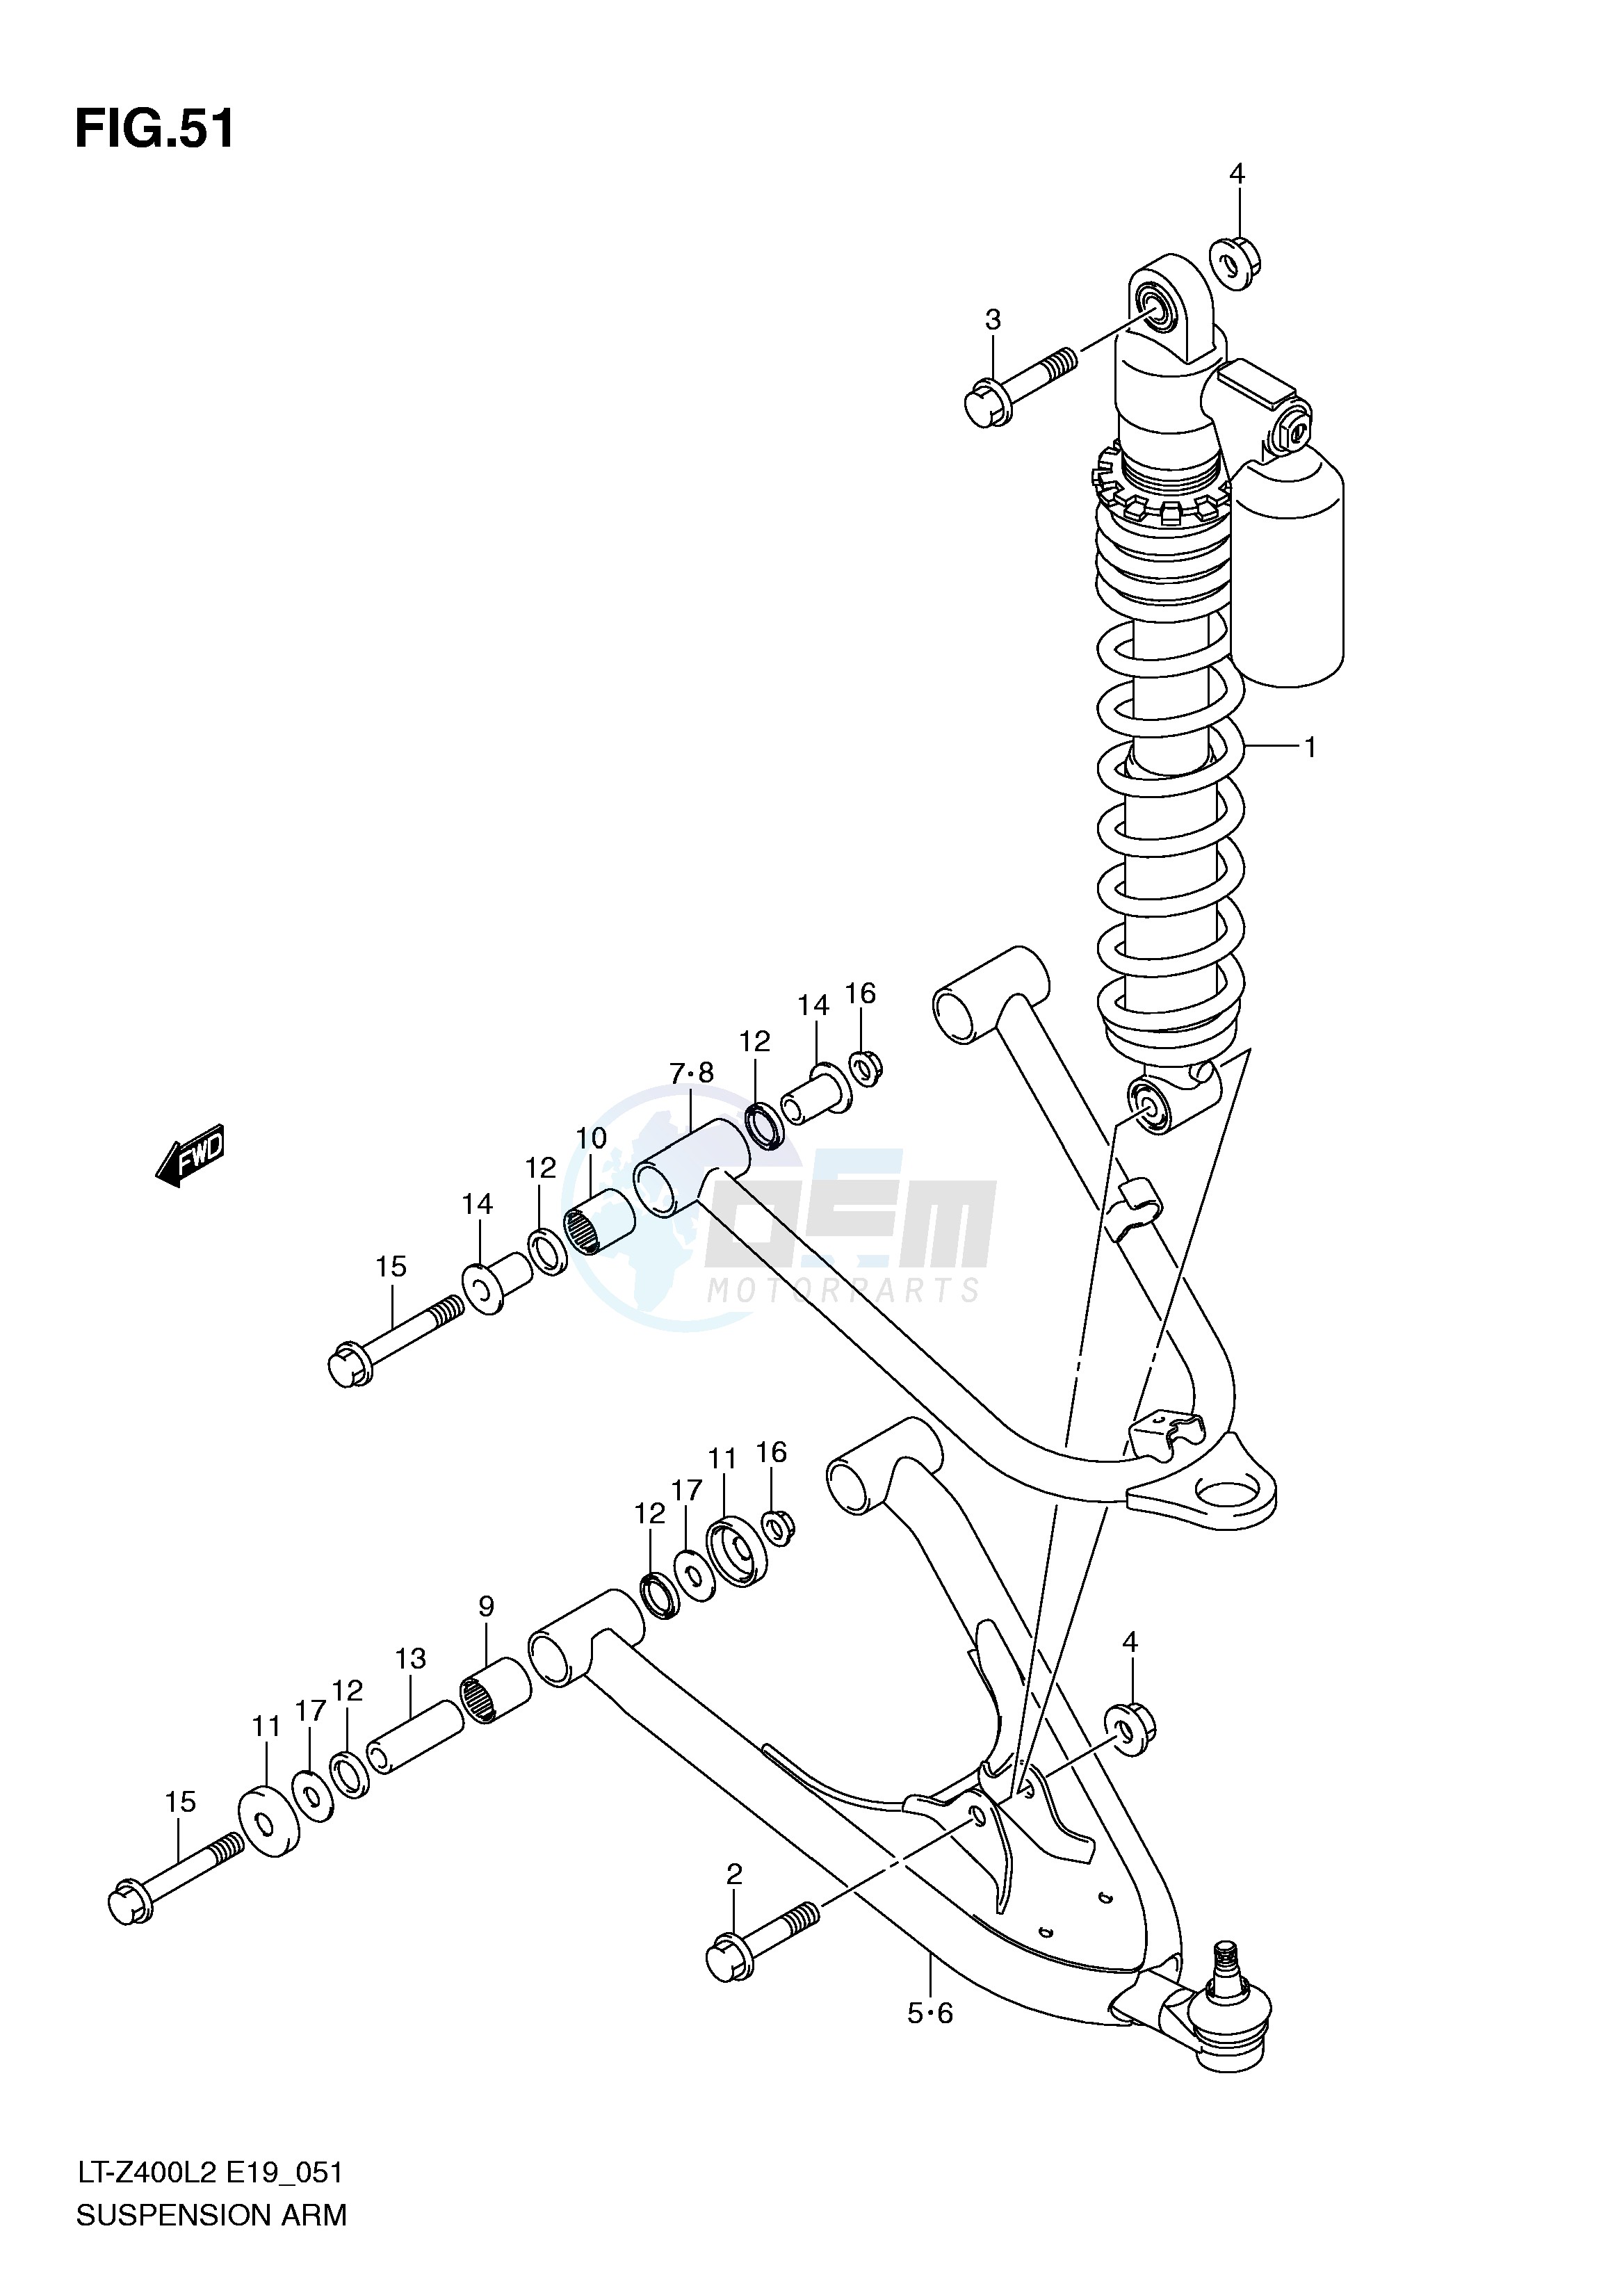 SUSPENSION ARM (LT-Z400L2 E19) blueprint